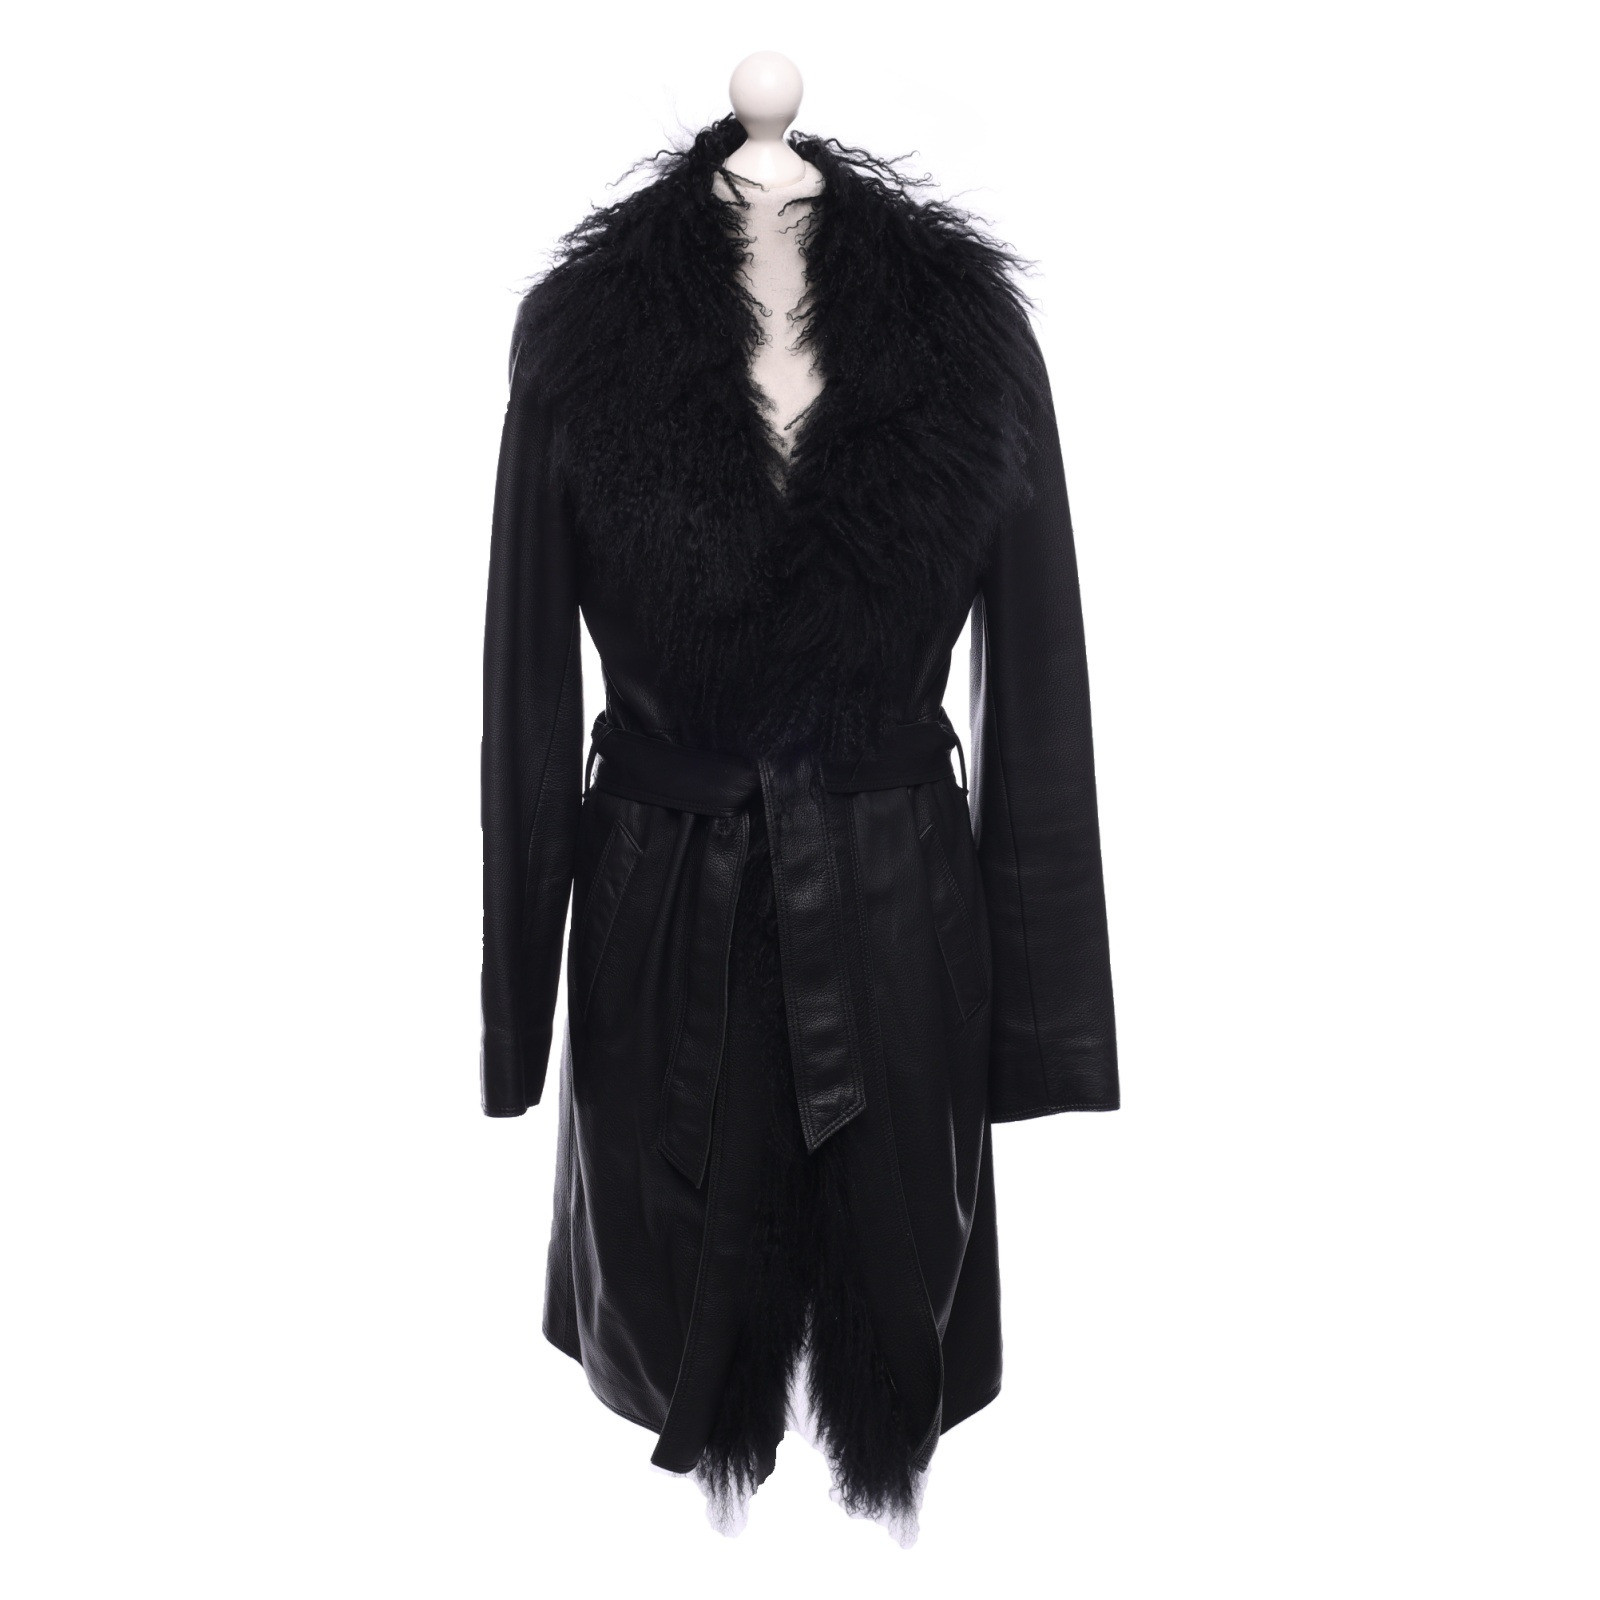 BONNIE MANFRED BOGNER Women's Jacket/Coat Leather in Black